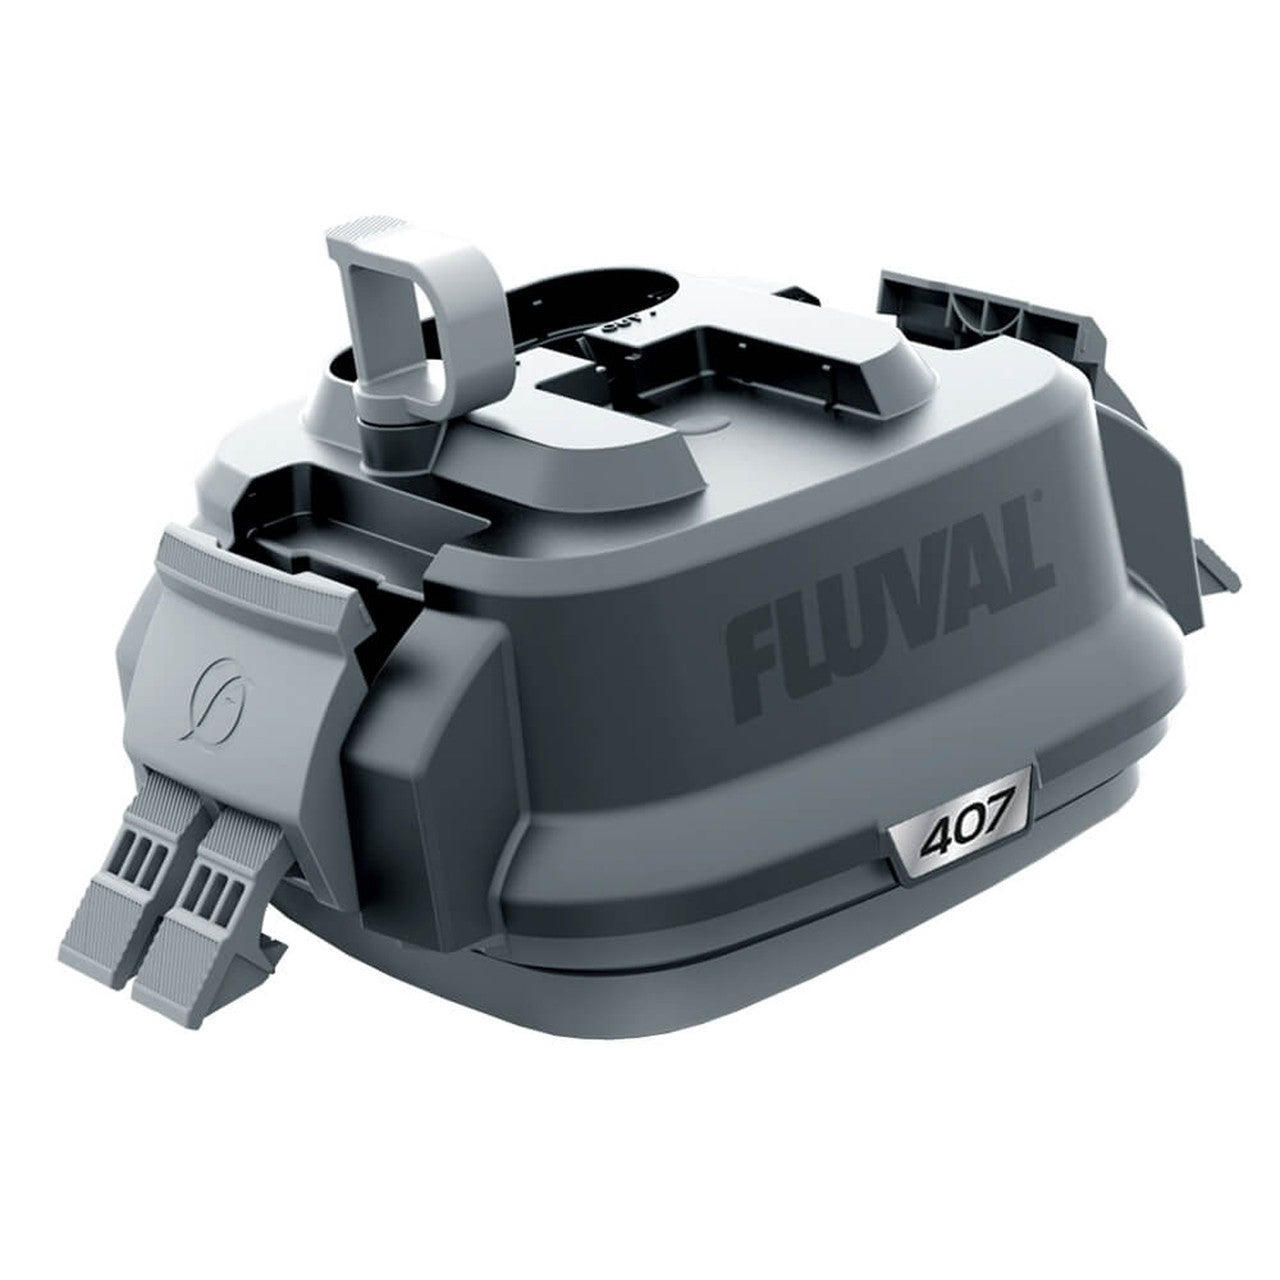 Fluval 407 Motor Head 120V, 60Hz 015561301046